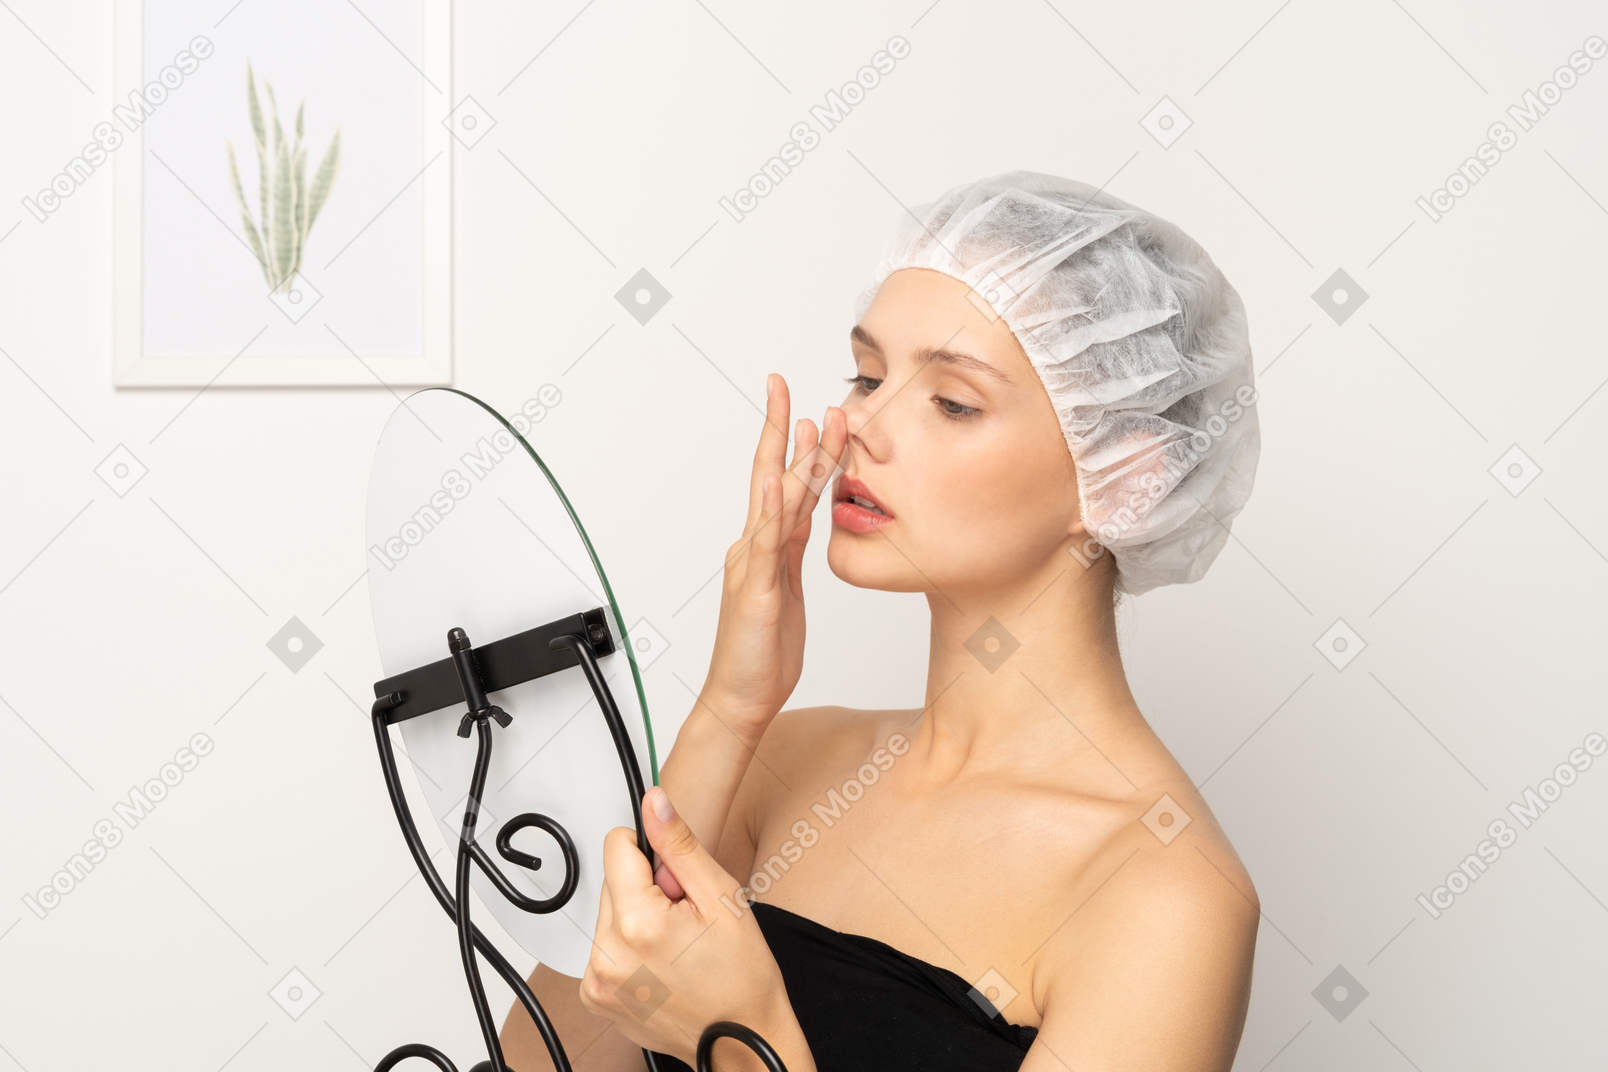 戴医用帽的年轻女子在照镜子时抬起鼻子